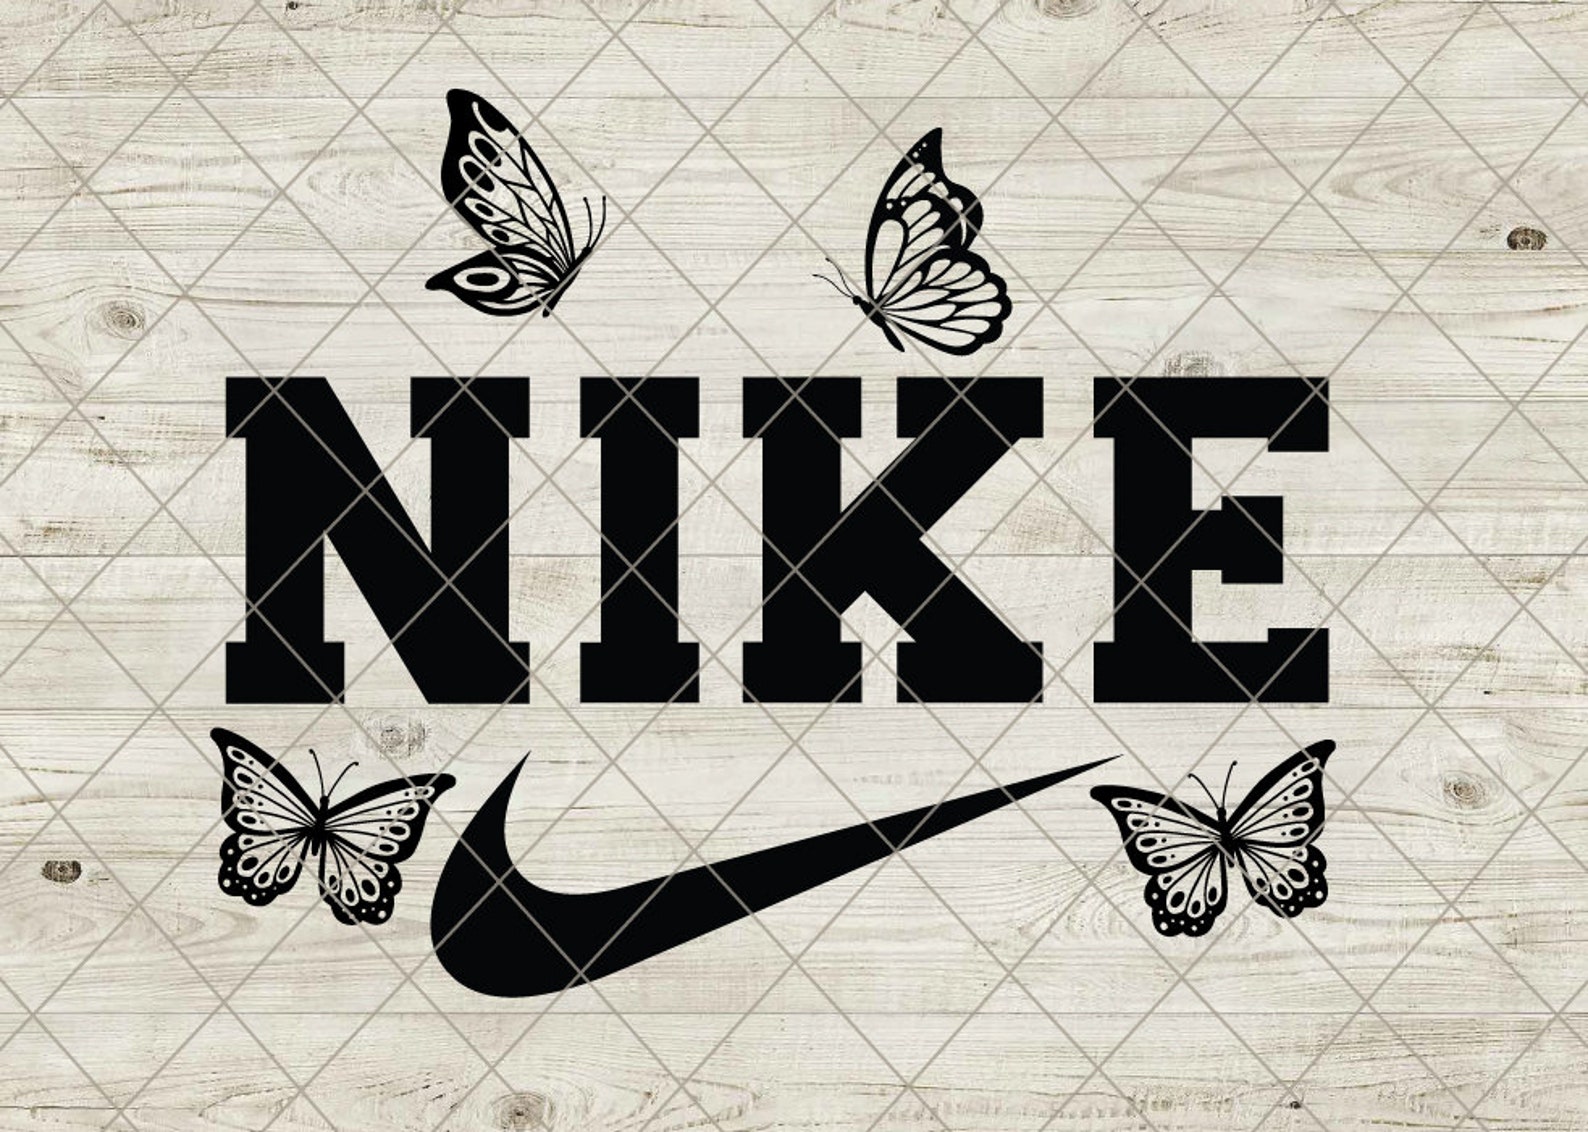 Vintage Nike Svg